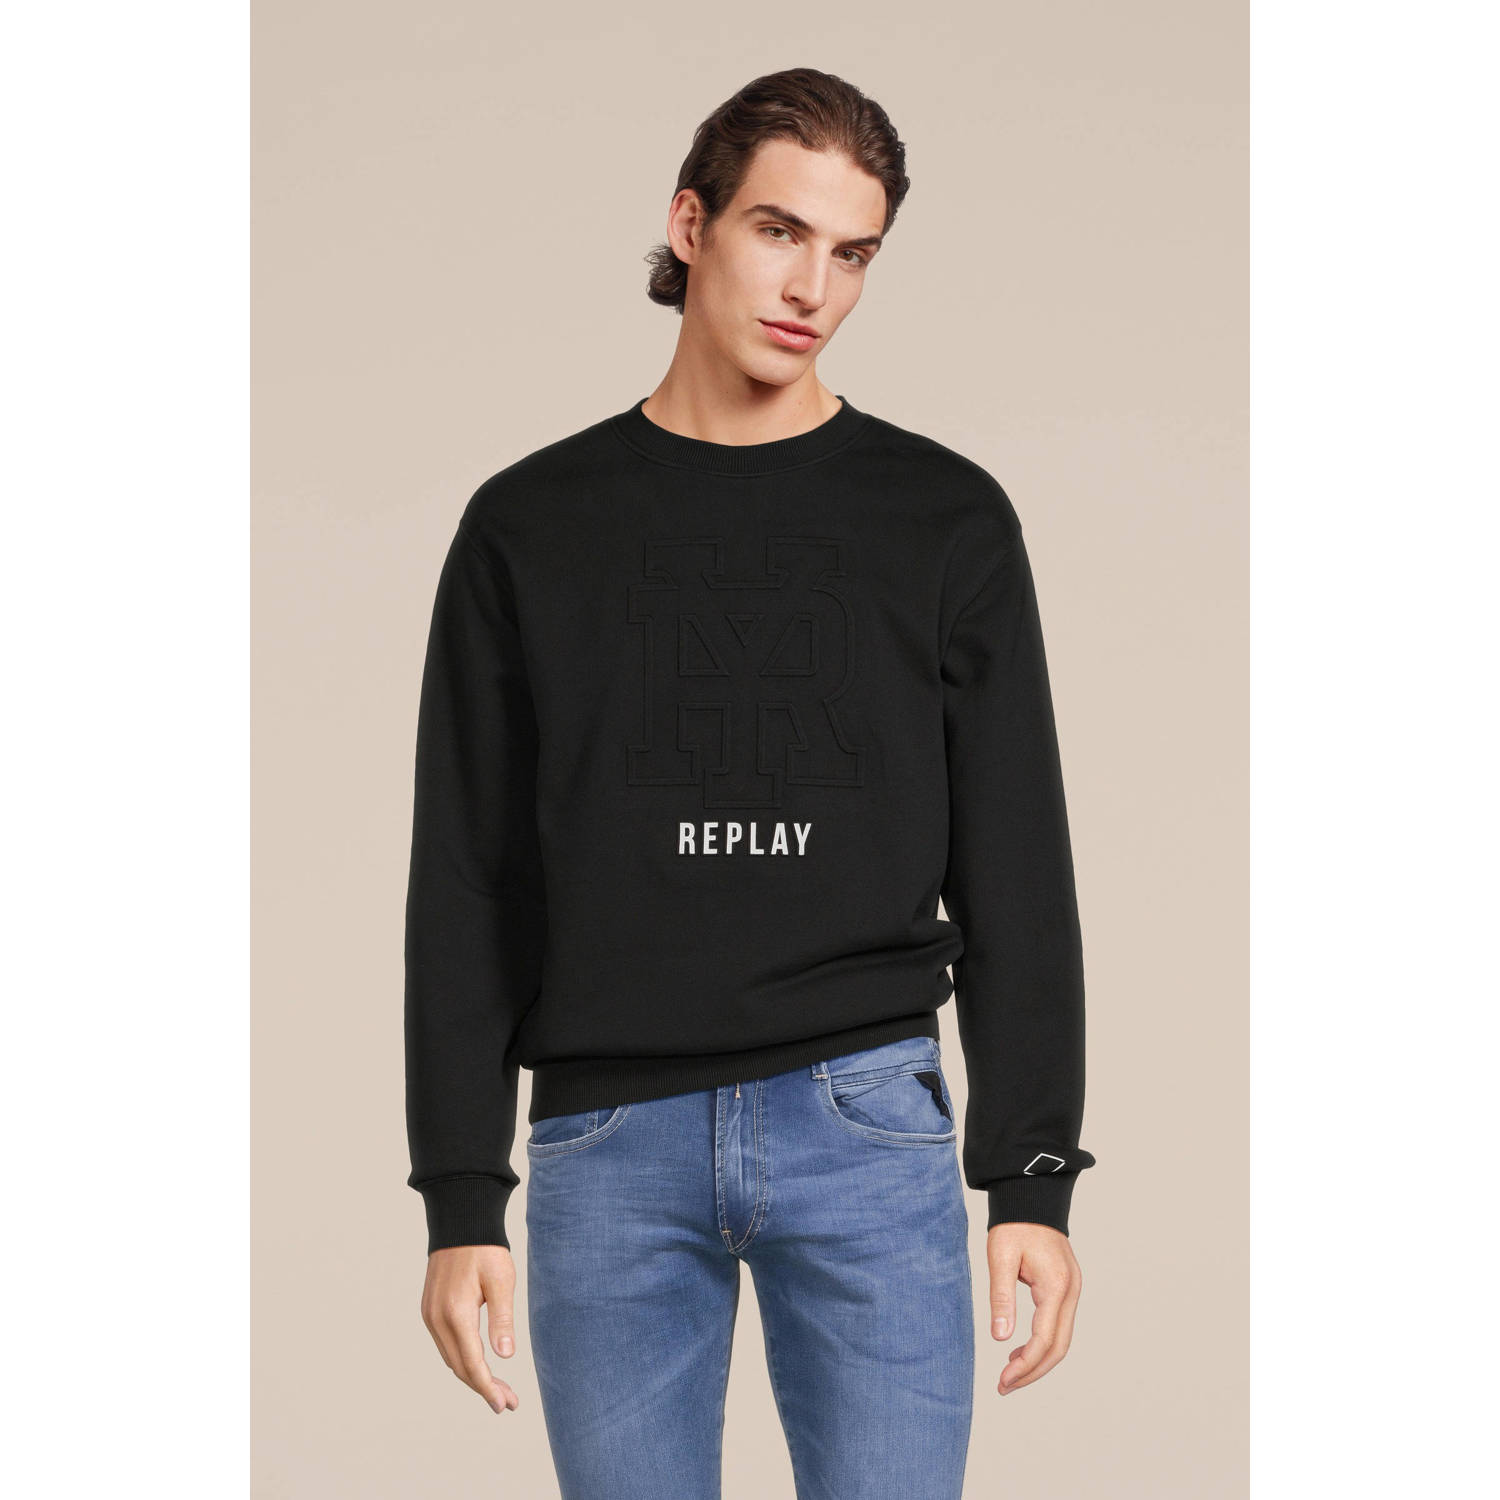 REPLAY sweater met printopdruk black